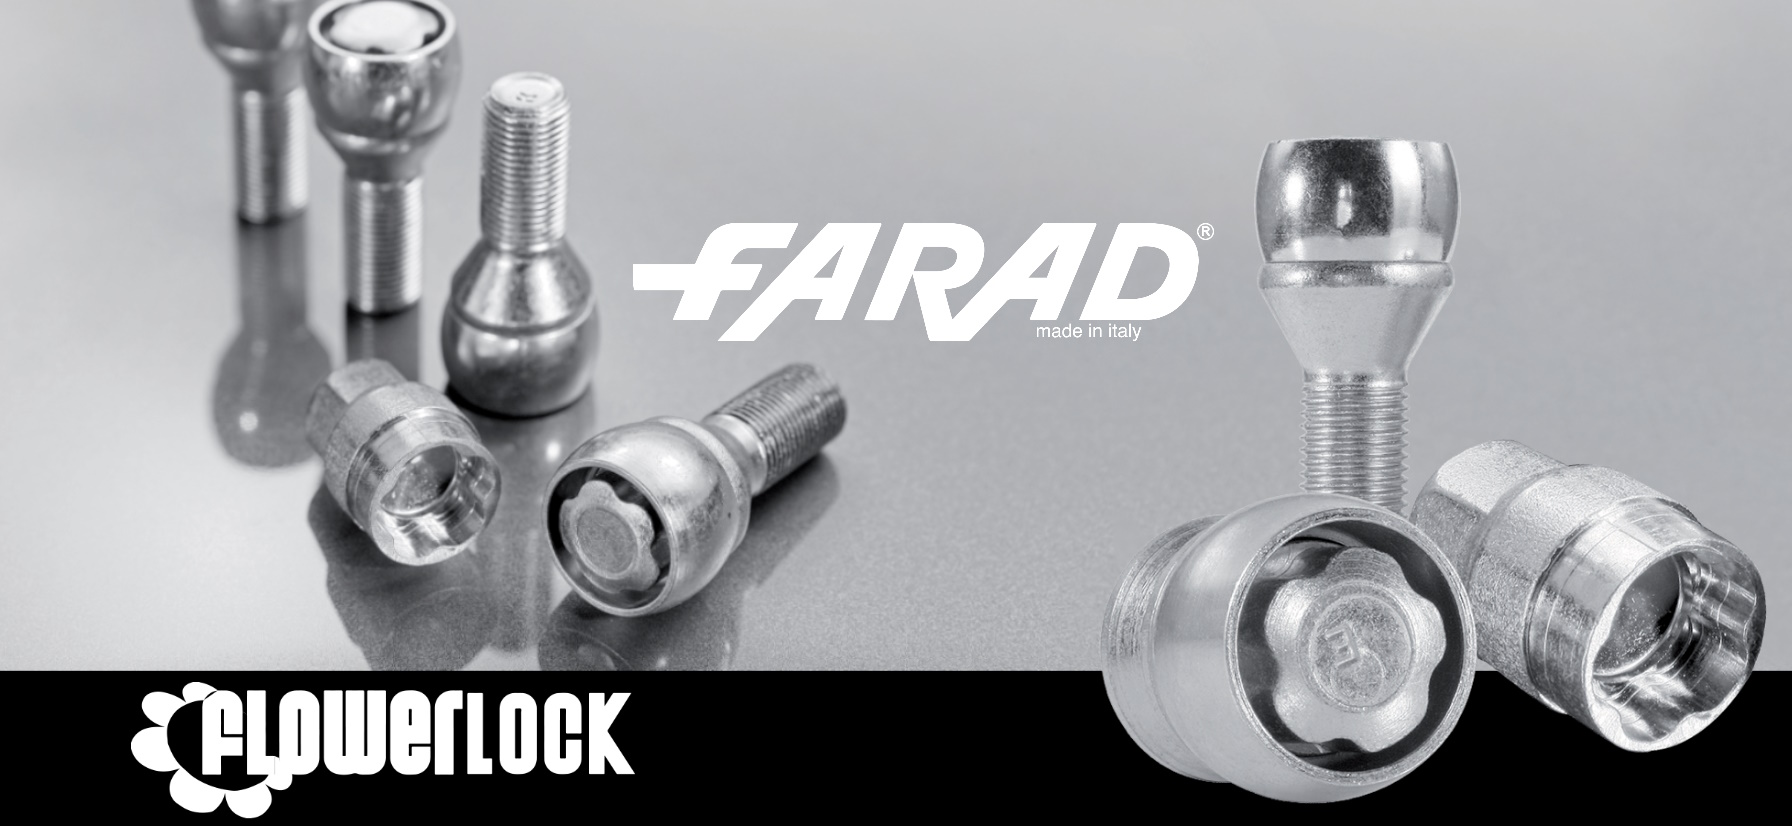 Farad FlowerLock M14x1.5x50mm